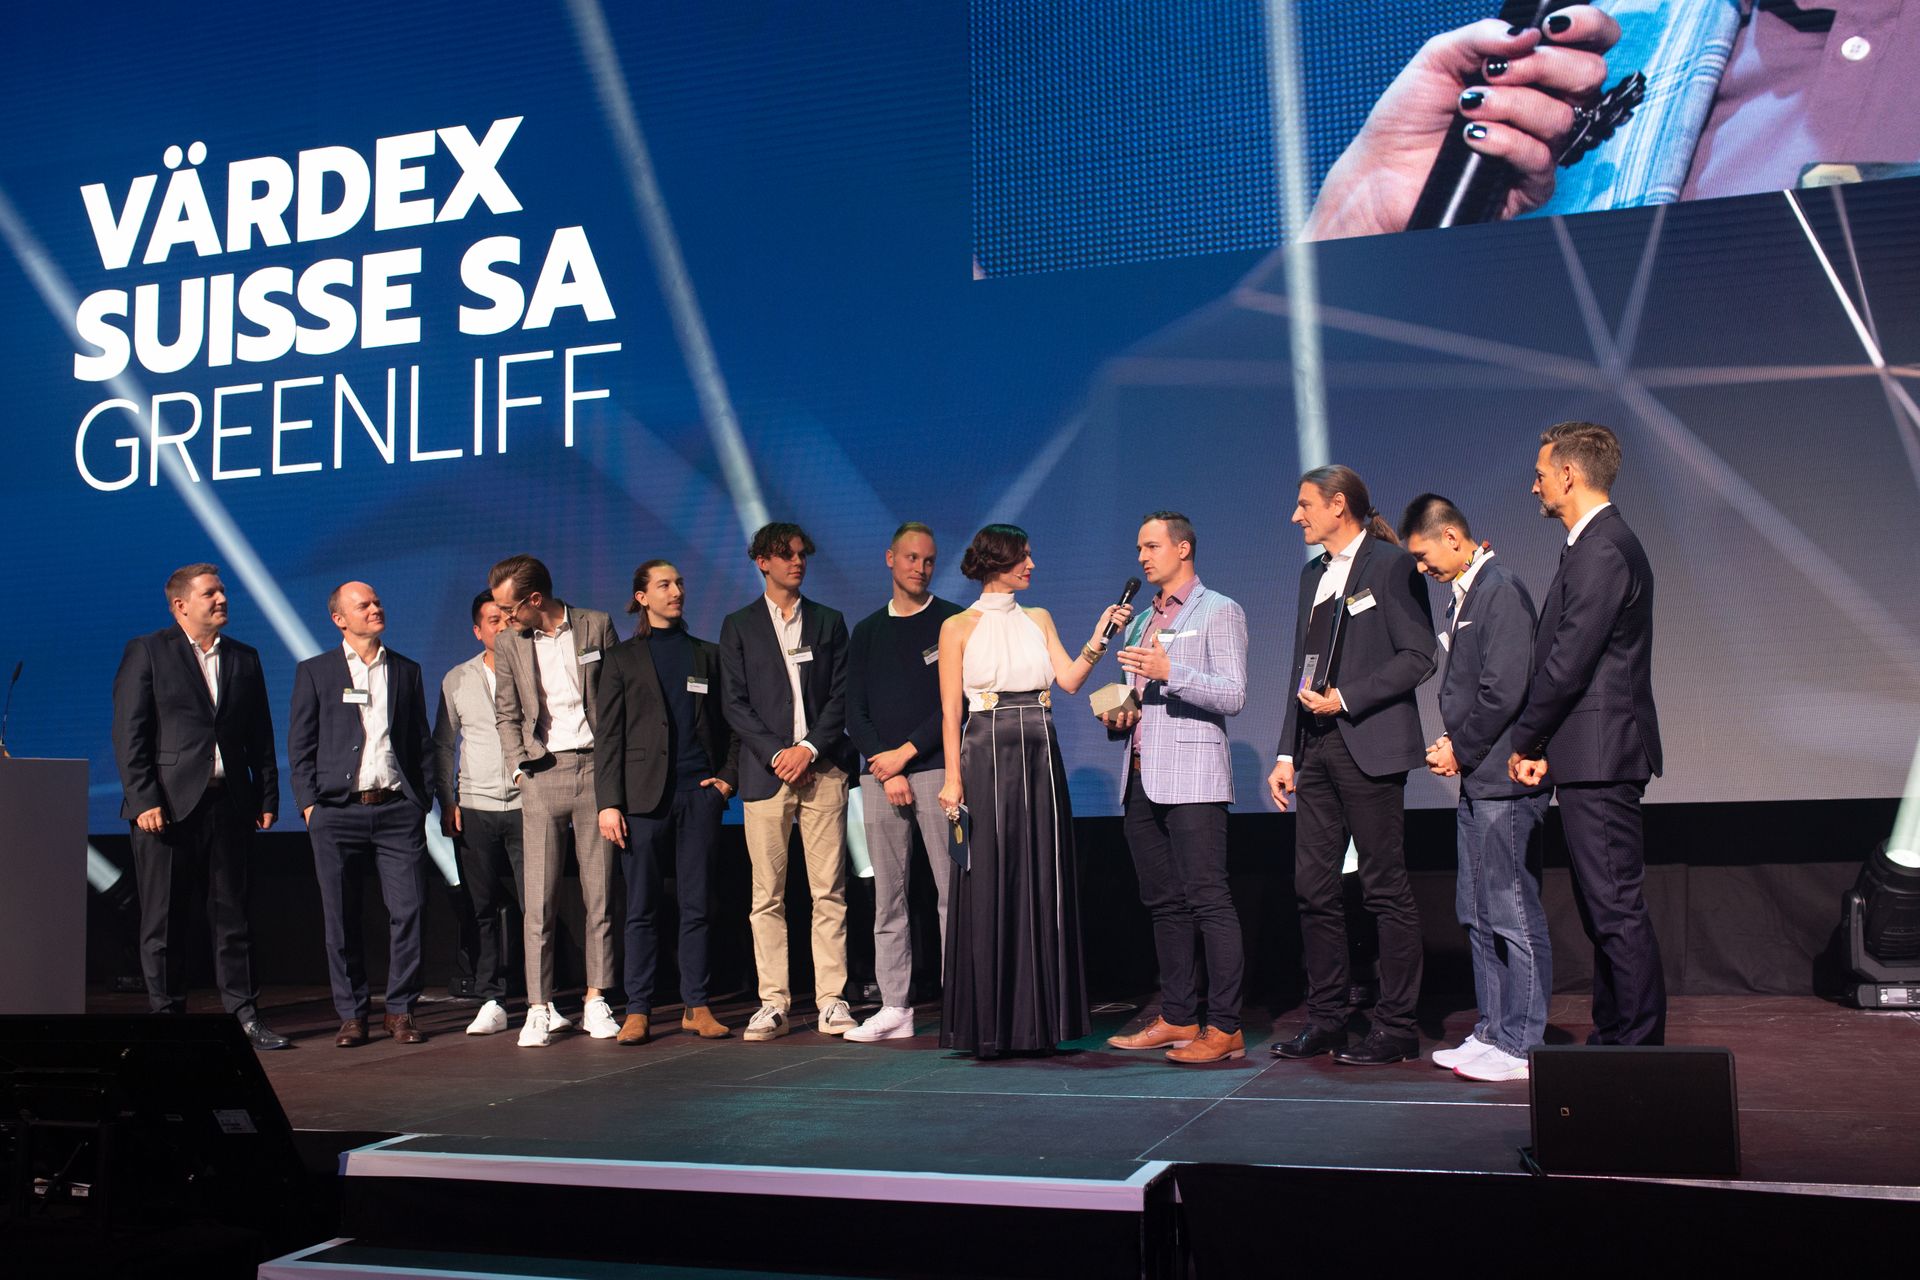 De bedrijven "Värdex Suisse" en "Greenliff" zijn bekroond met de twee beste "Highest Quality"-prijzen bij de "Digital Economy Awards" van Zwitserland